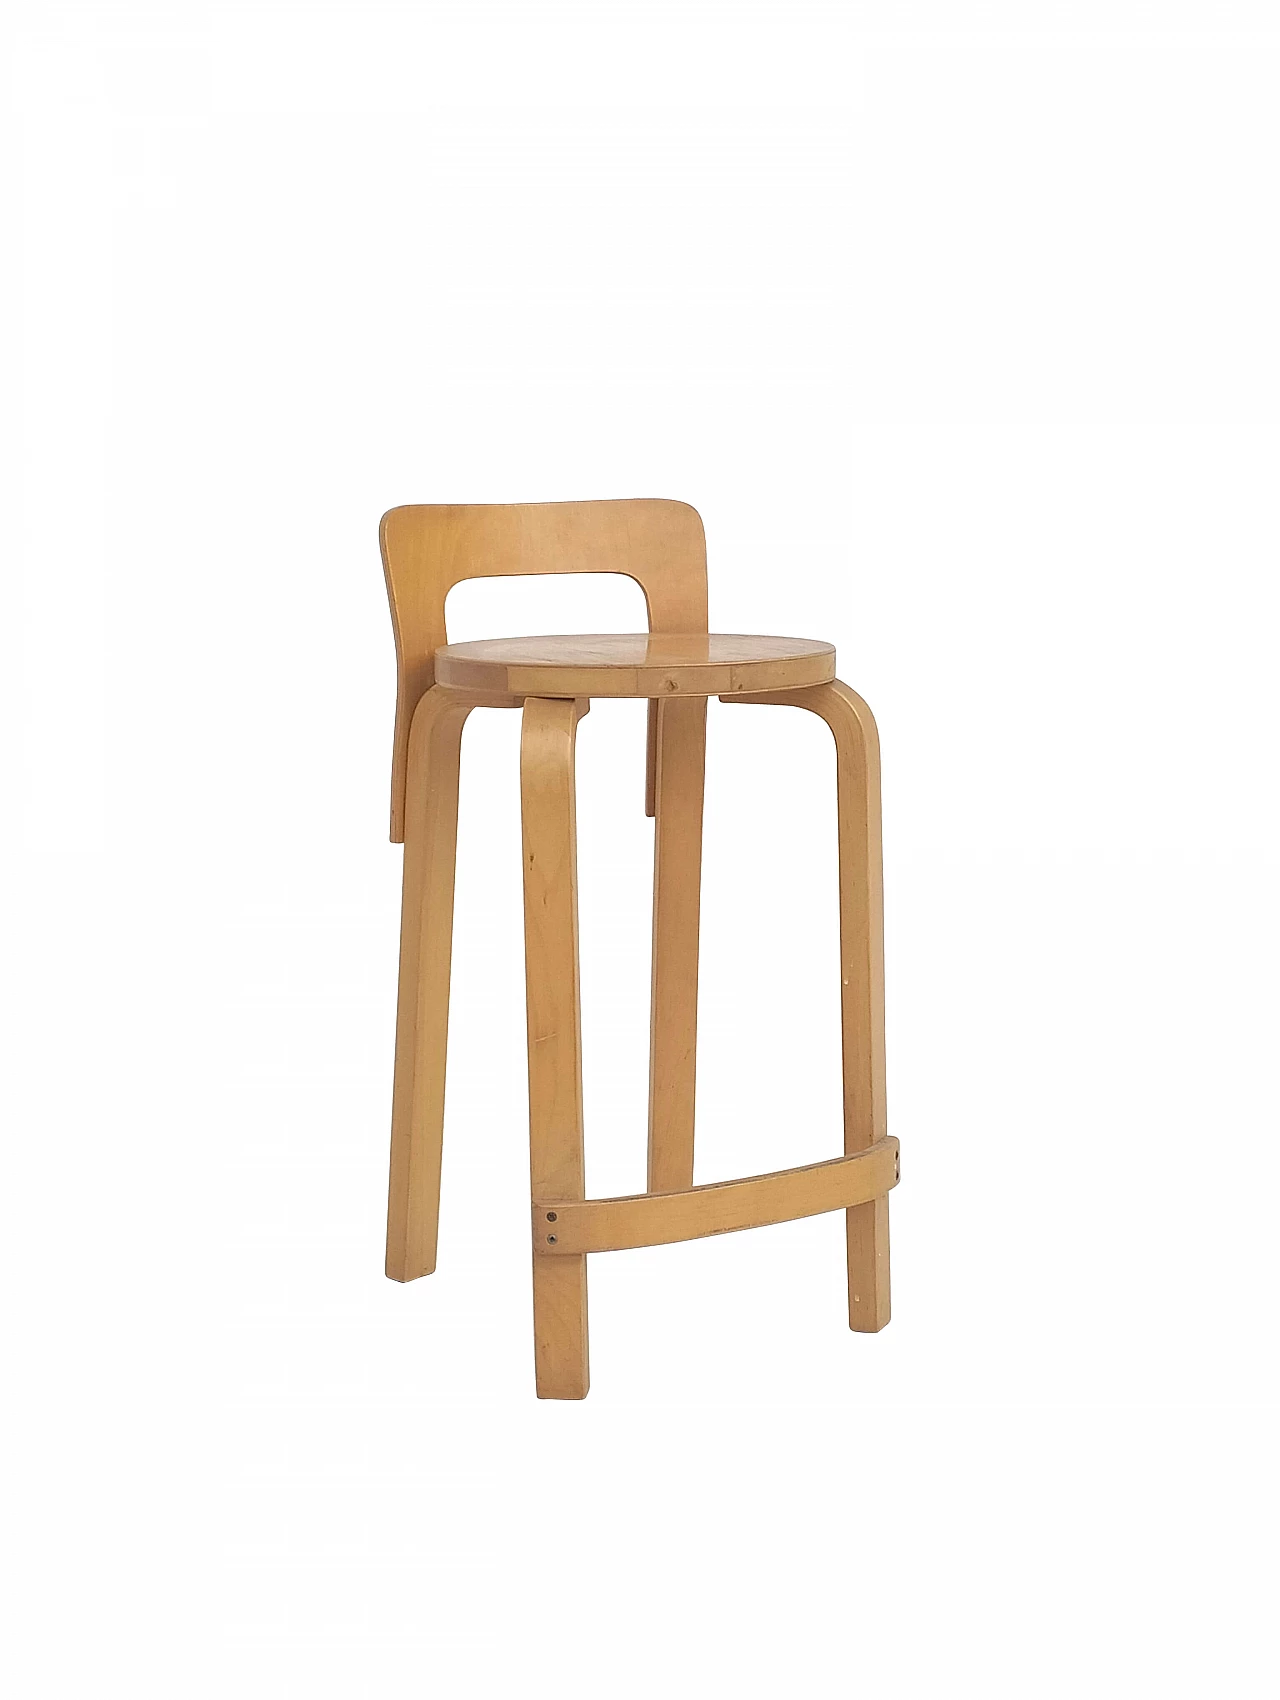 K65 bent birch plywood stool by Alvar Aalto for Artek, 1970s 10